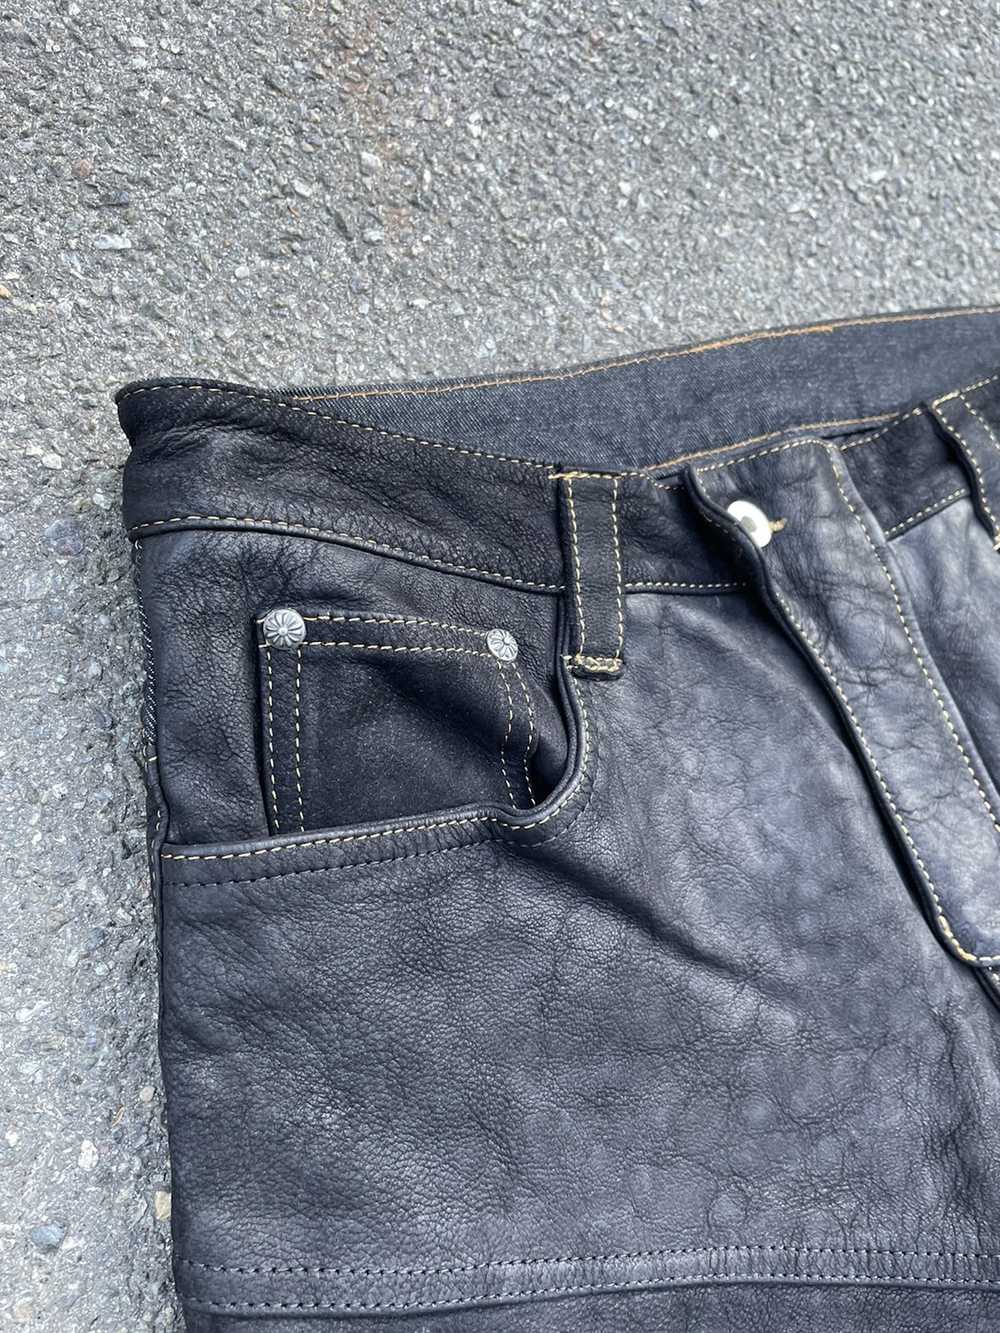 Biker Jeans × Genuine Leather × Vintage Vintage C… - image 4